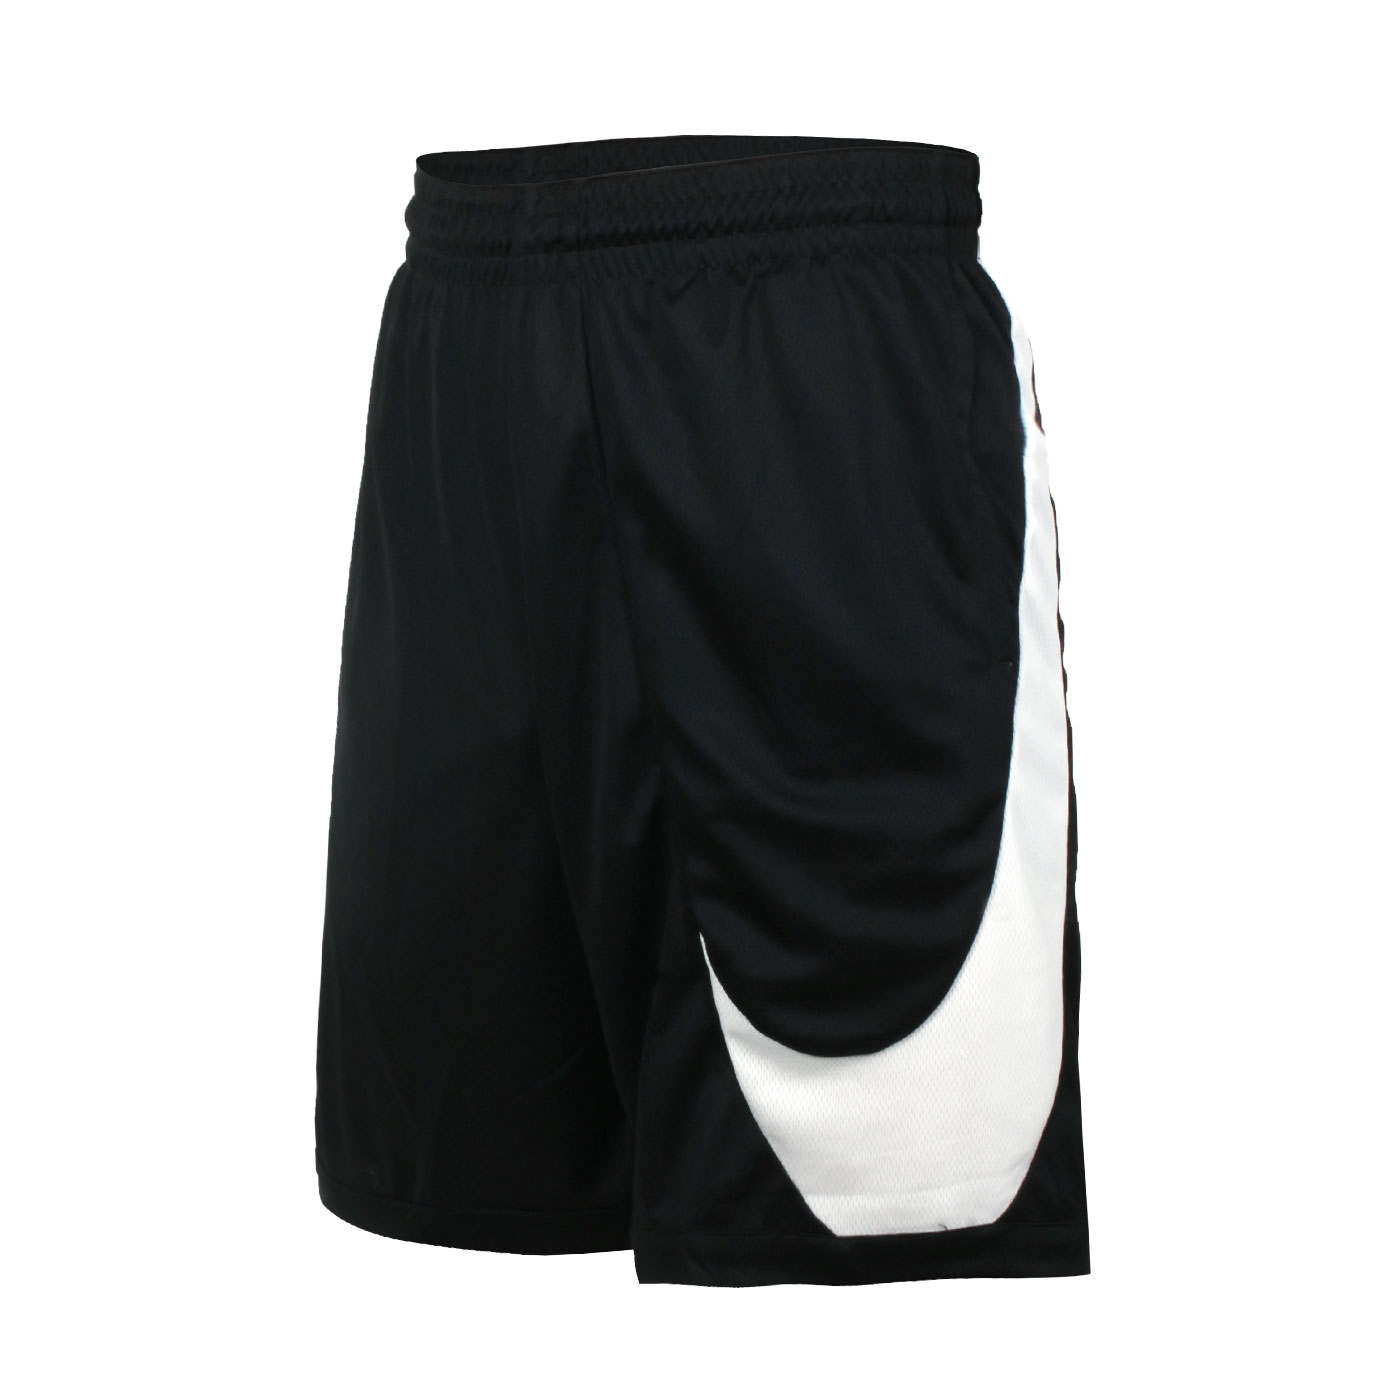 NIKE 男款籃球短褲 DH6764-013 - 黑白